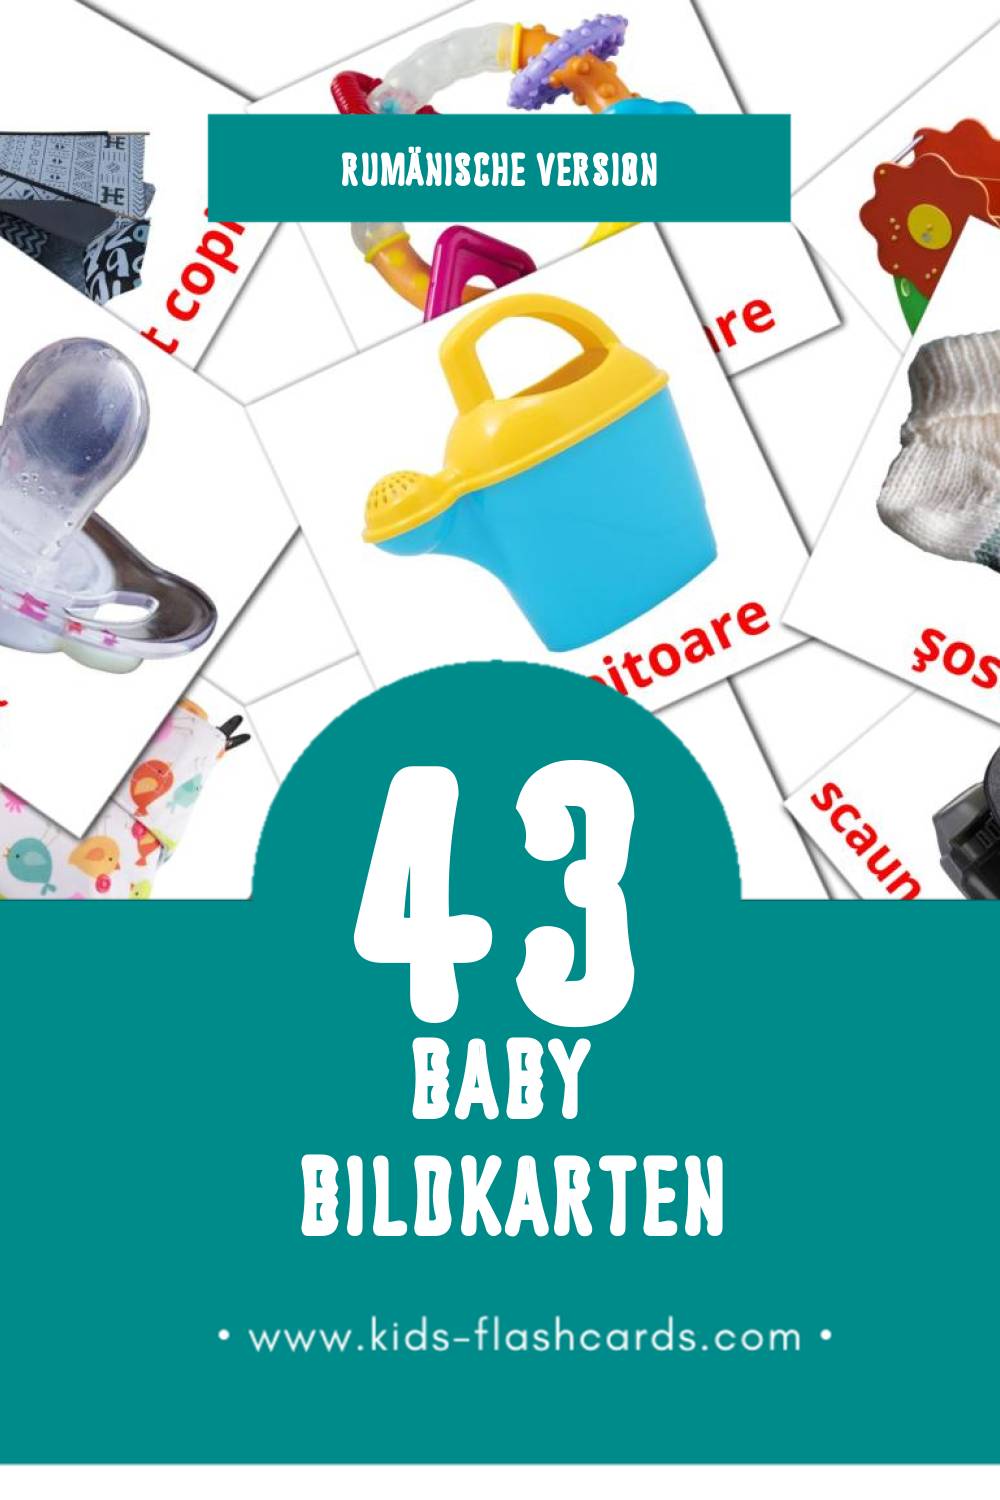 Visual Bebe Flashcards für Kleinkinder (45 Karten in Rumänisch)